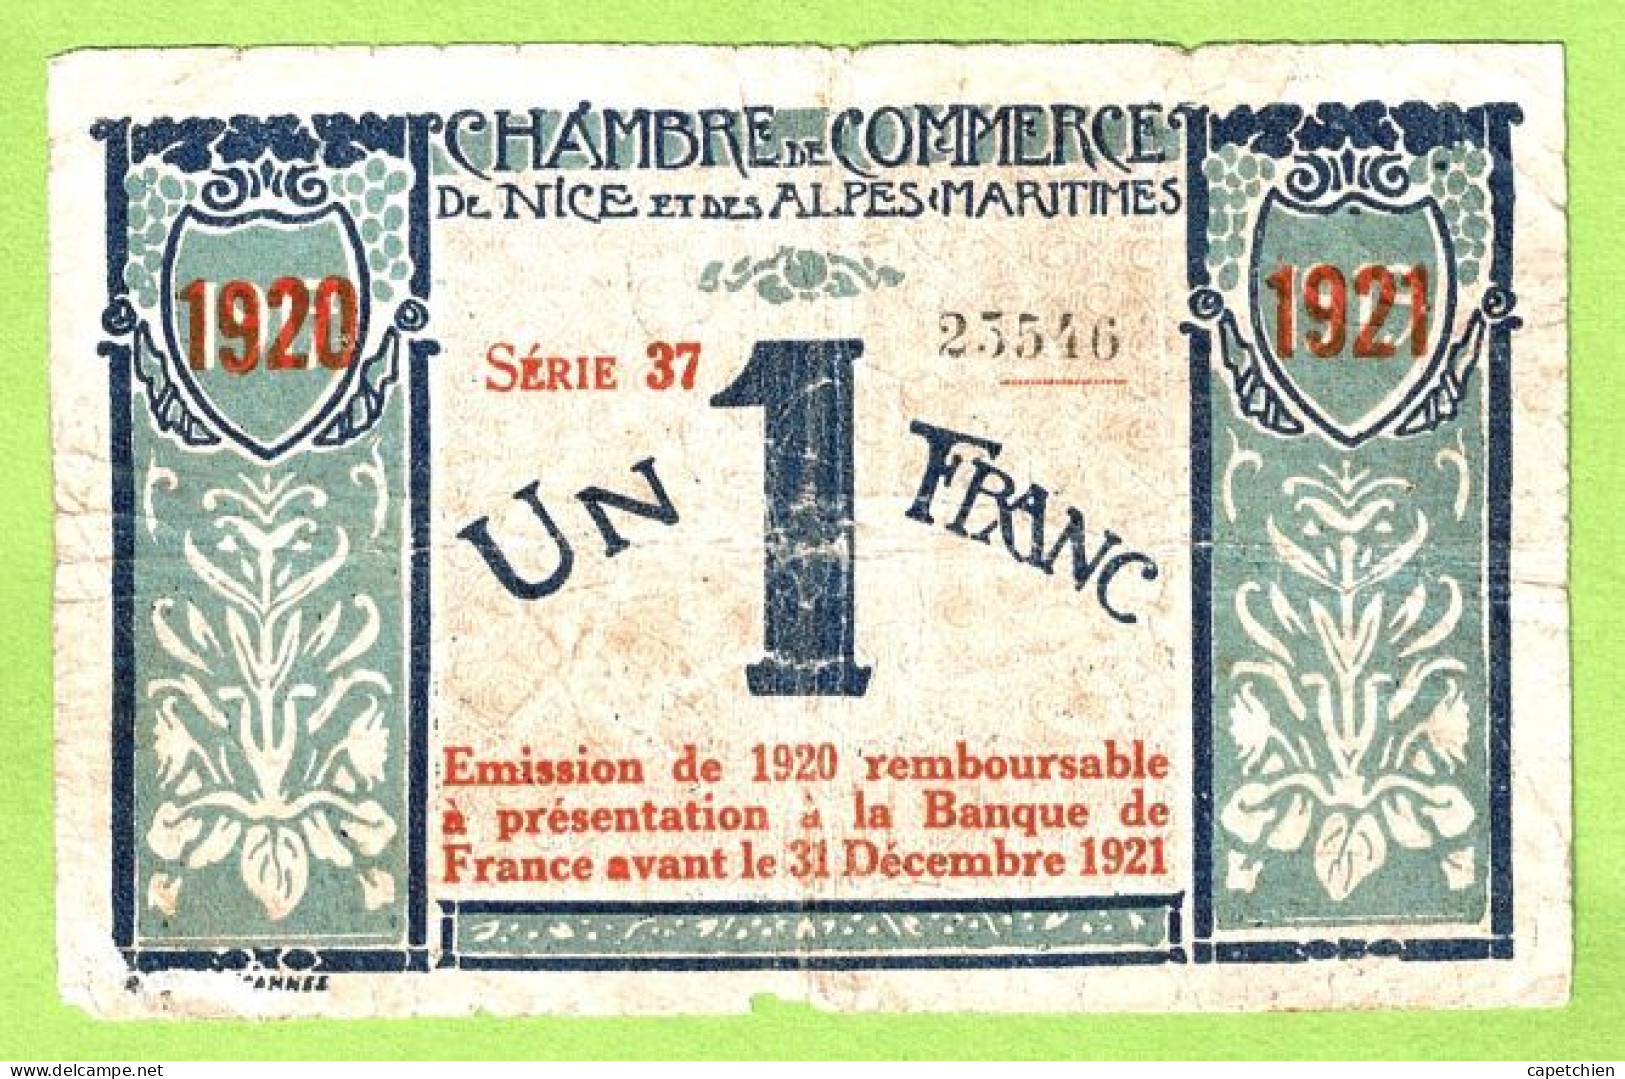 FRANCE / CHAMBRE De COMMERCE / NICE - ALPES MARITIMES / 1 FRANC / 1917-1919 SURCHARGE ROUGE 1920-1921 / N° 23546 / S 37 - Cámara De Comercio